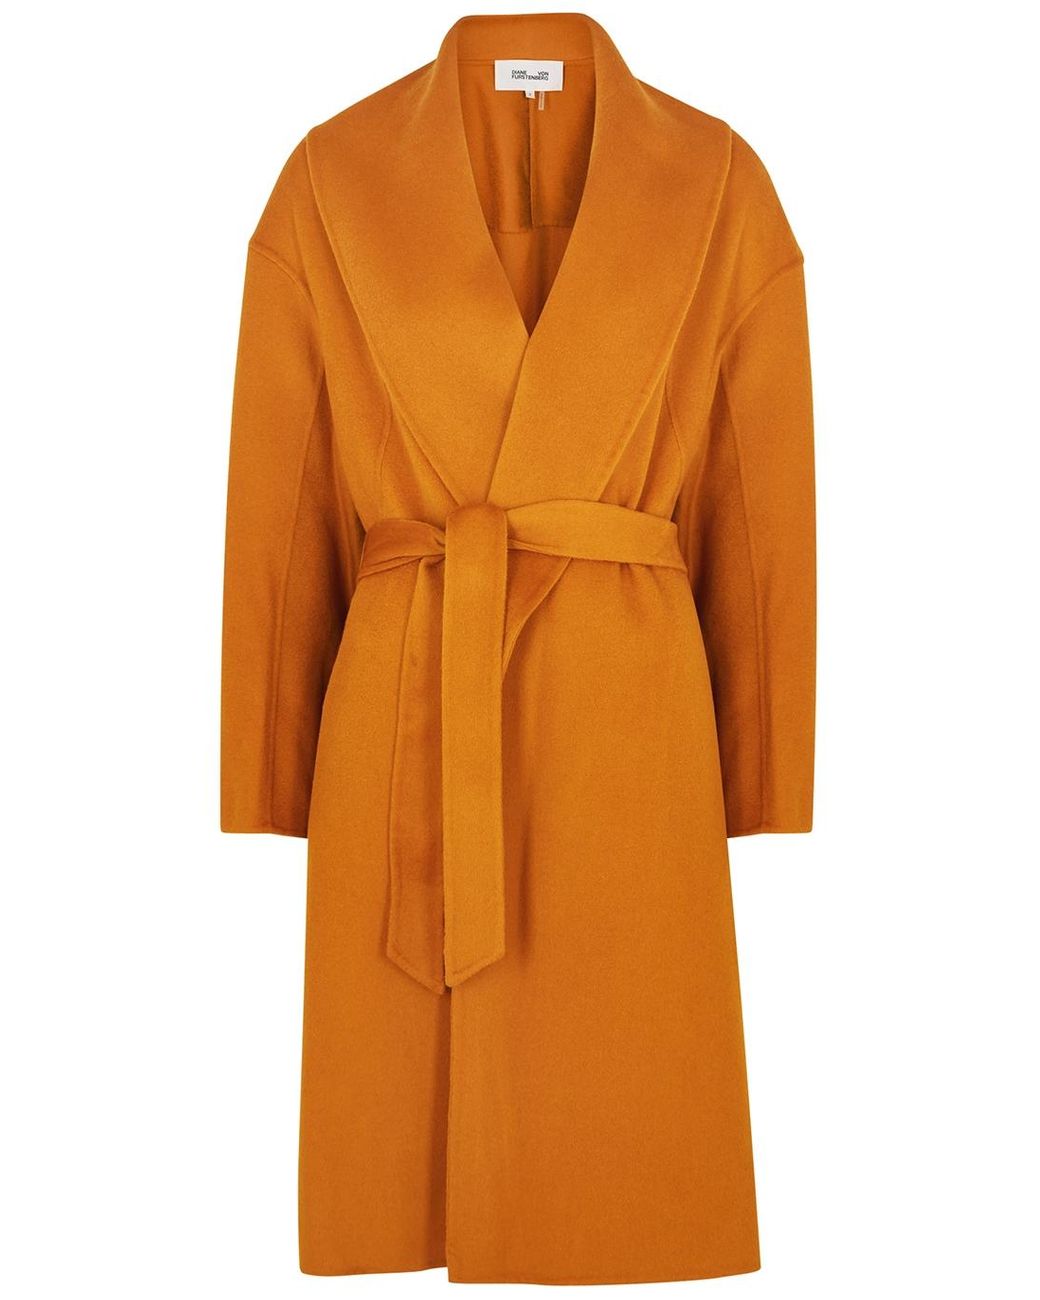 Diane von Furstenberg Nico Wool Felt Coat in Orange | Lyst